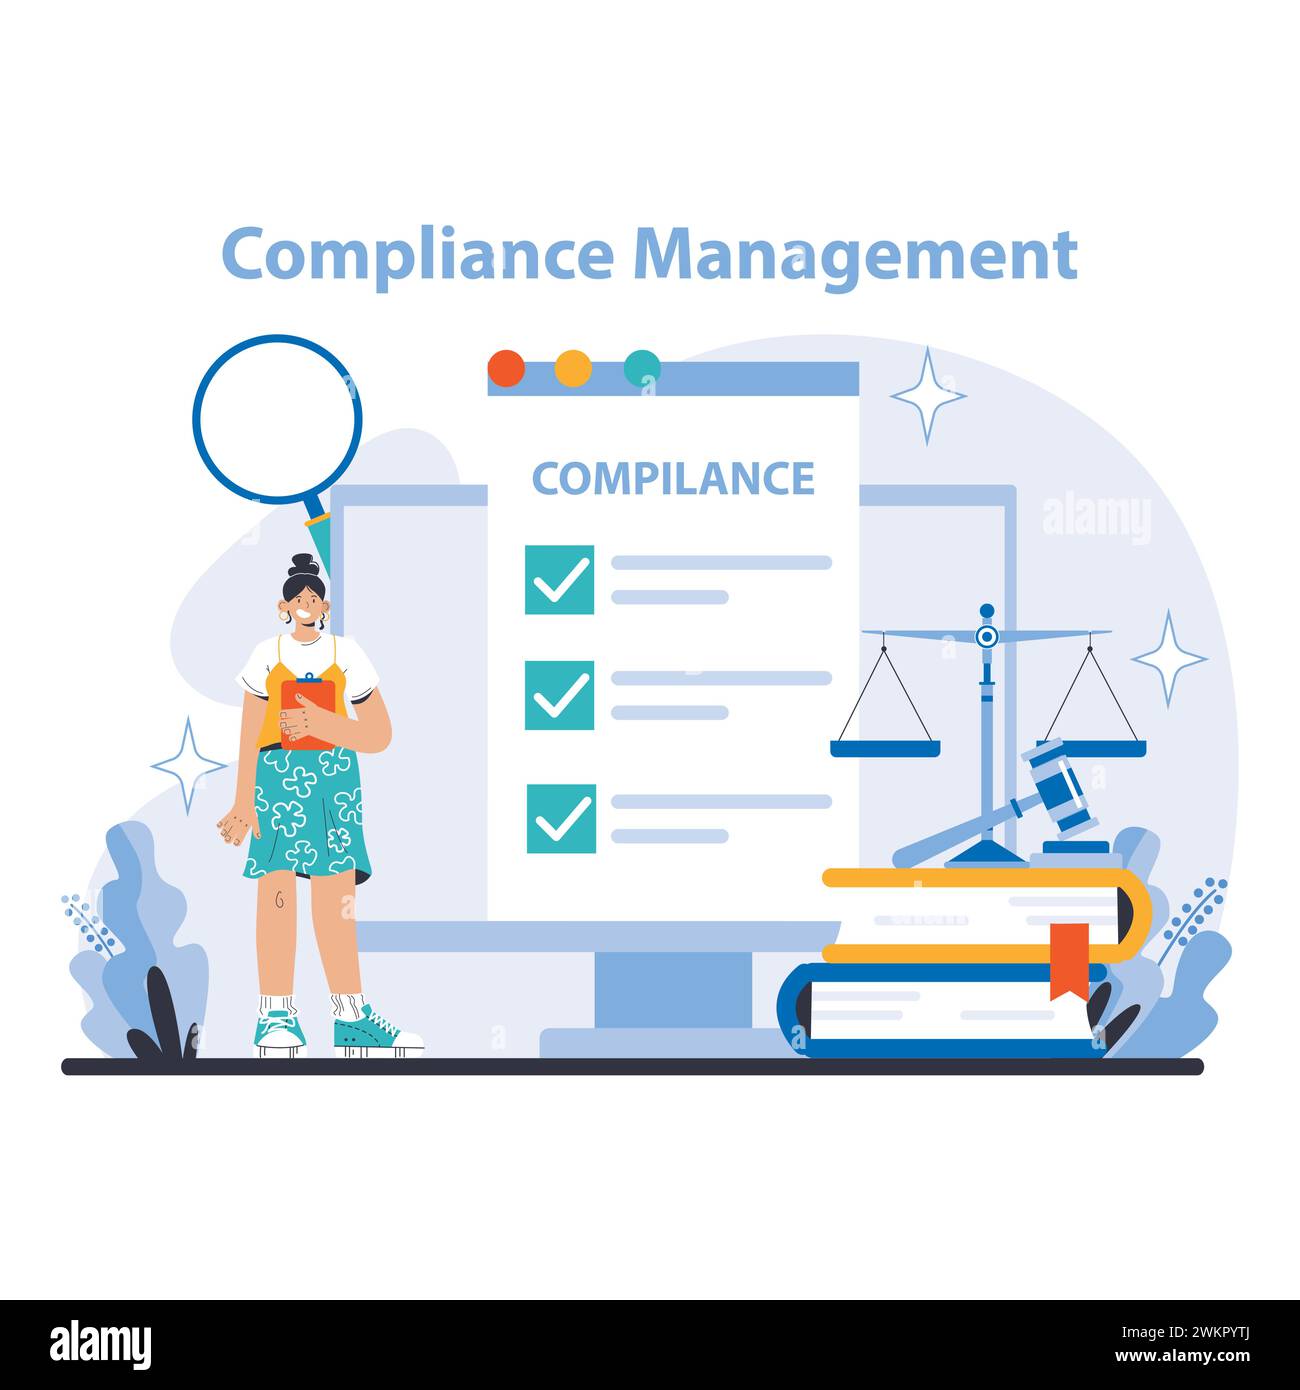 Compliance Management-Konzept. Detaillierte Darstellung der Einhaltung gesetzlicher Vorschriften, gesetzlicher Standards und der Durchsetzung von Richtlinien in Unternehmensprozessen. Systematische Kontrollen und Abwägungen dargestellt. Stock Vektor